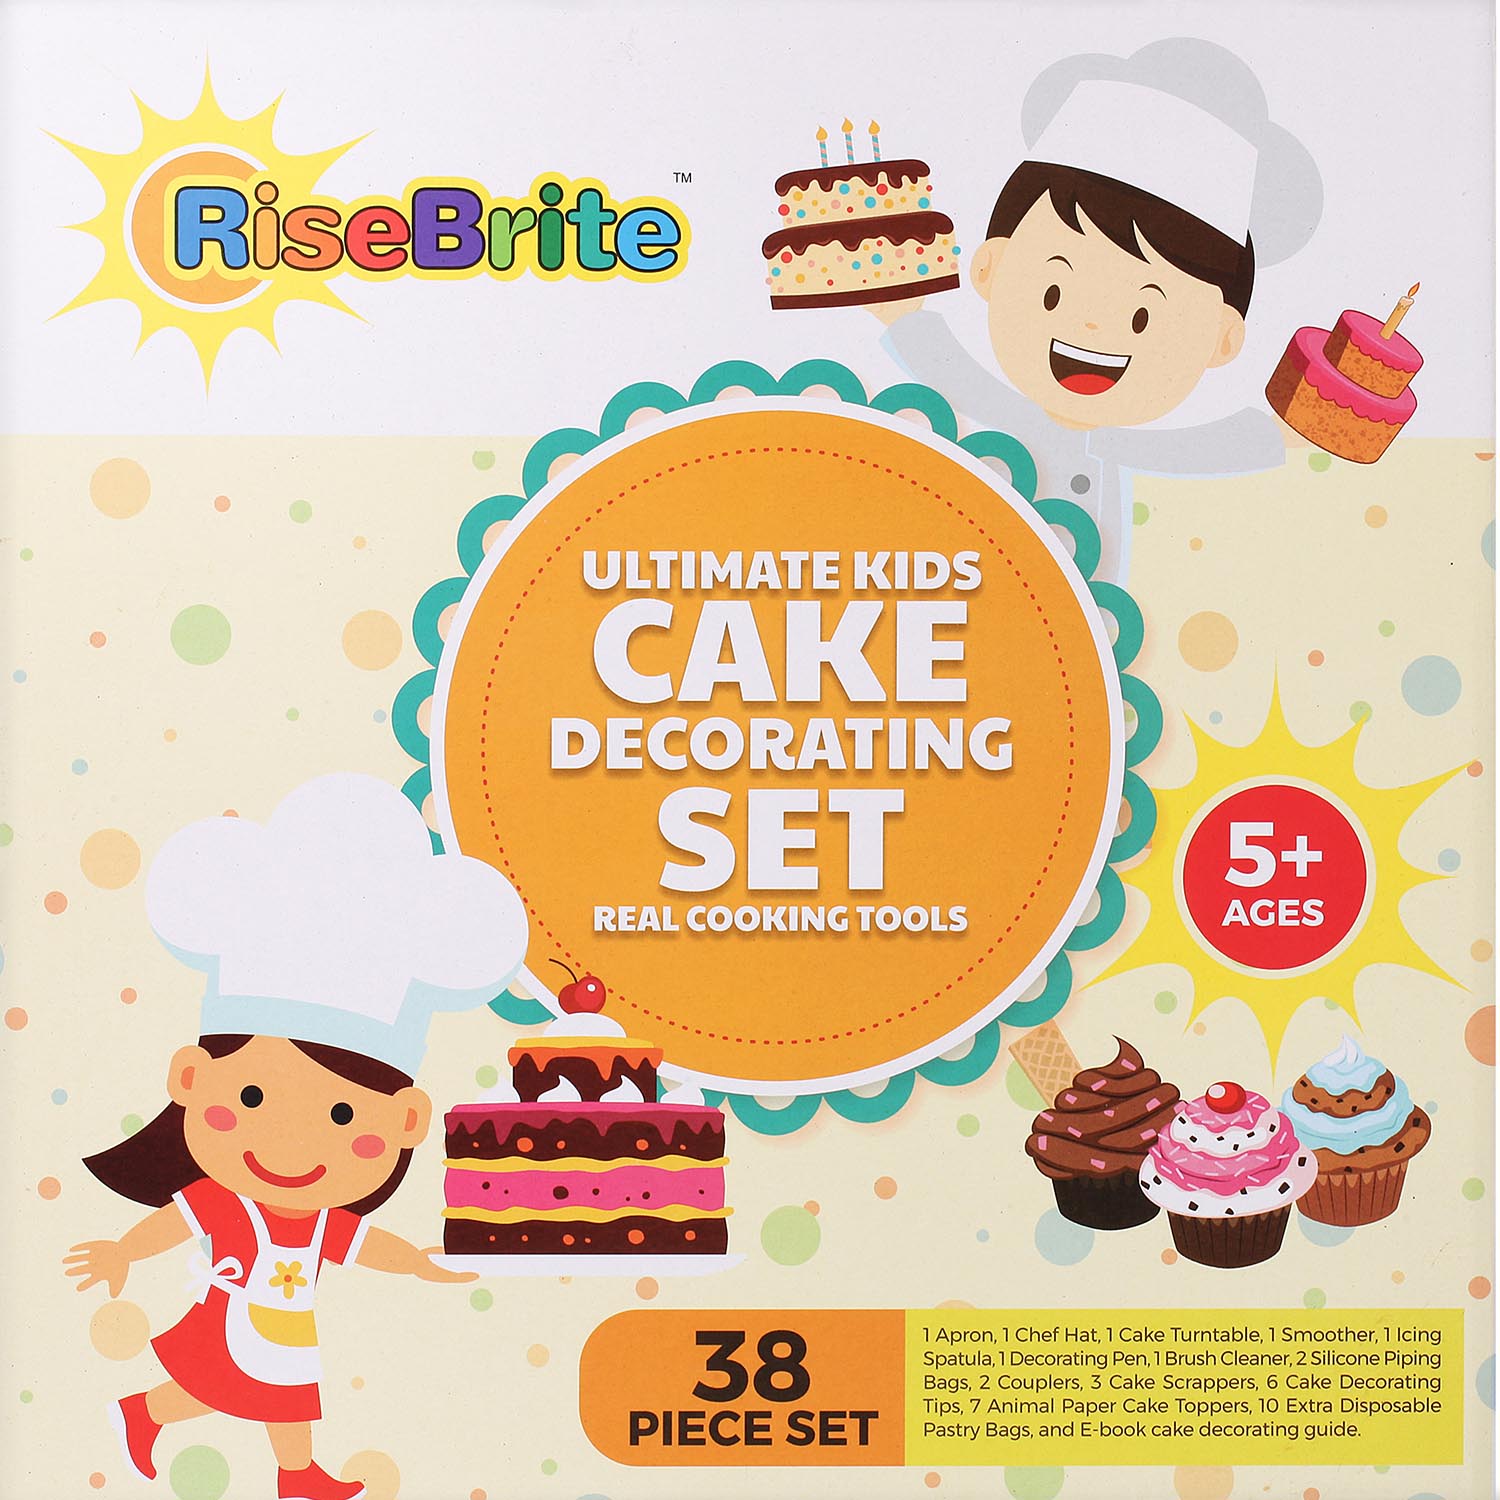 RiseBrite Ultimate Kids Cake Decorating Set Box